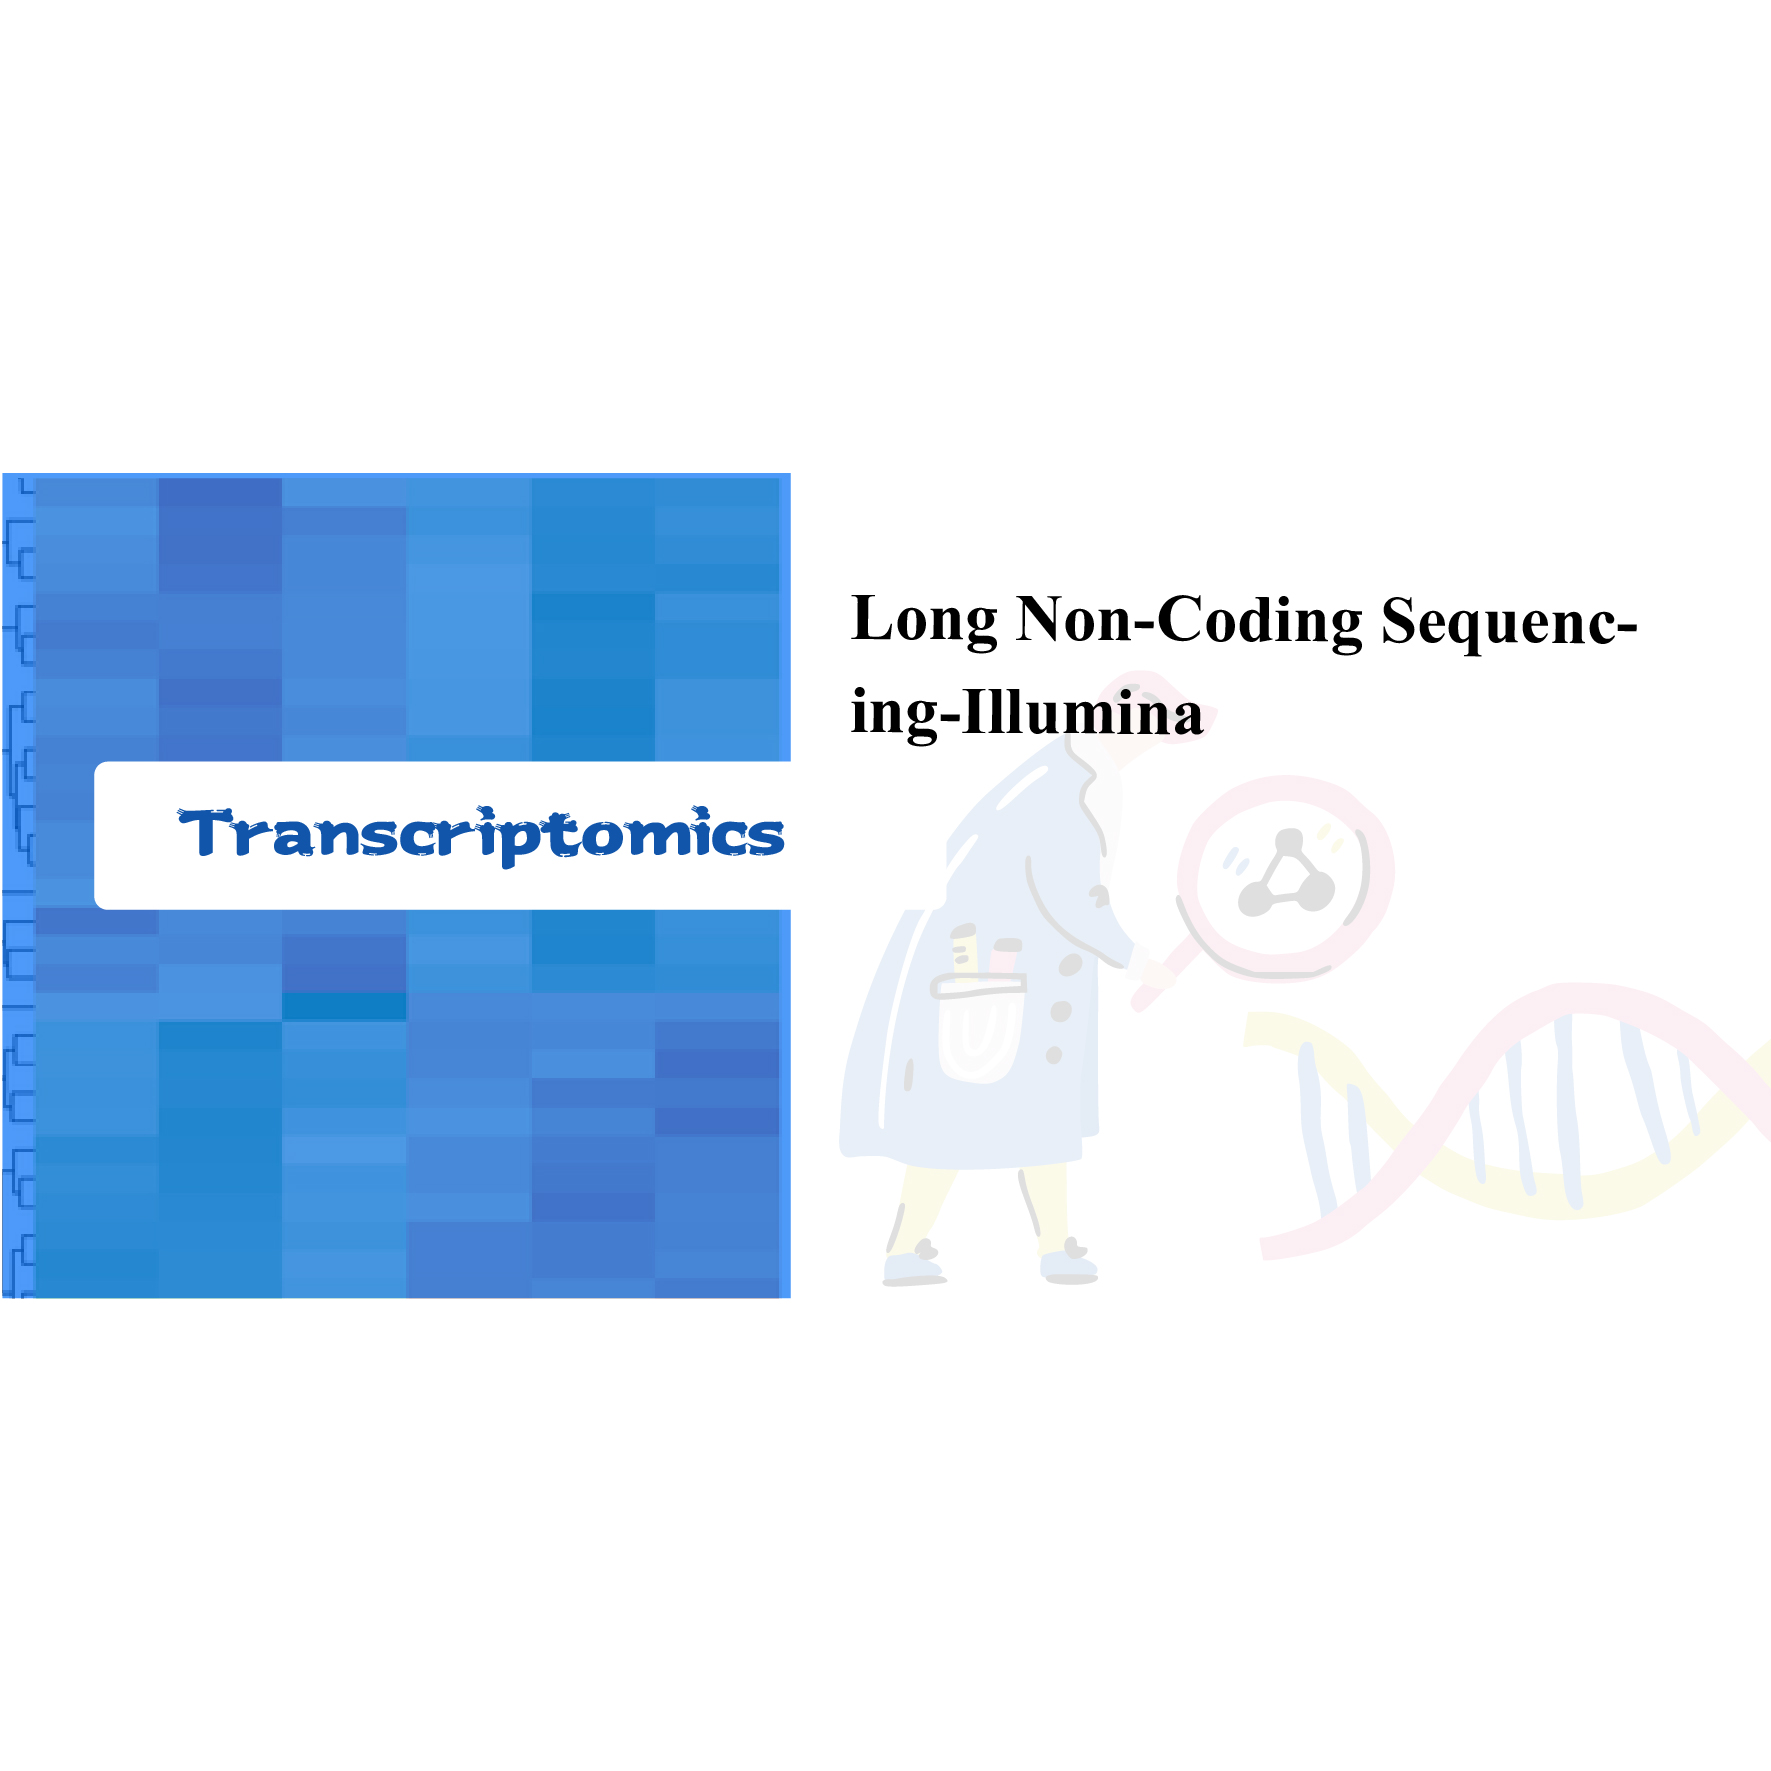 Sequencing non-coding panjang-Illumina